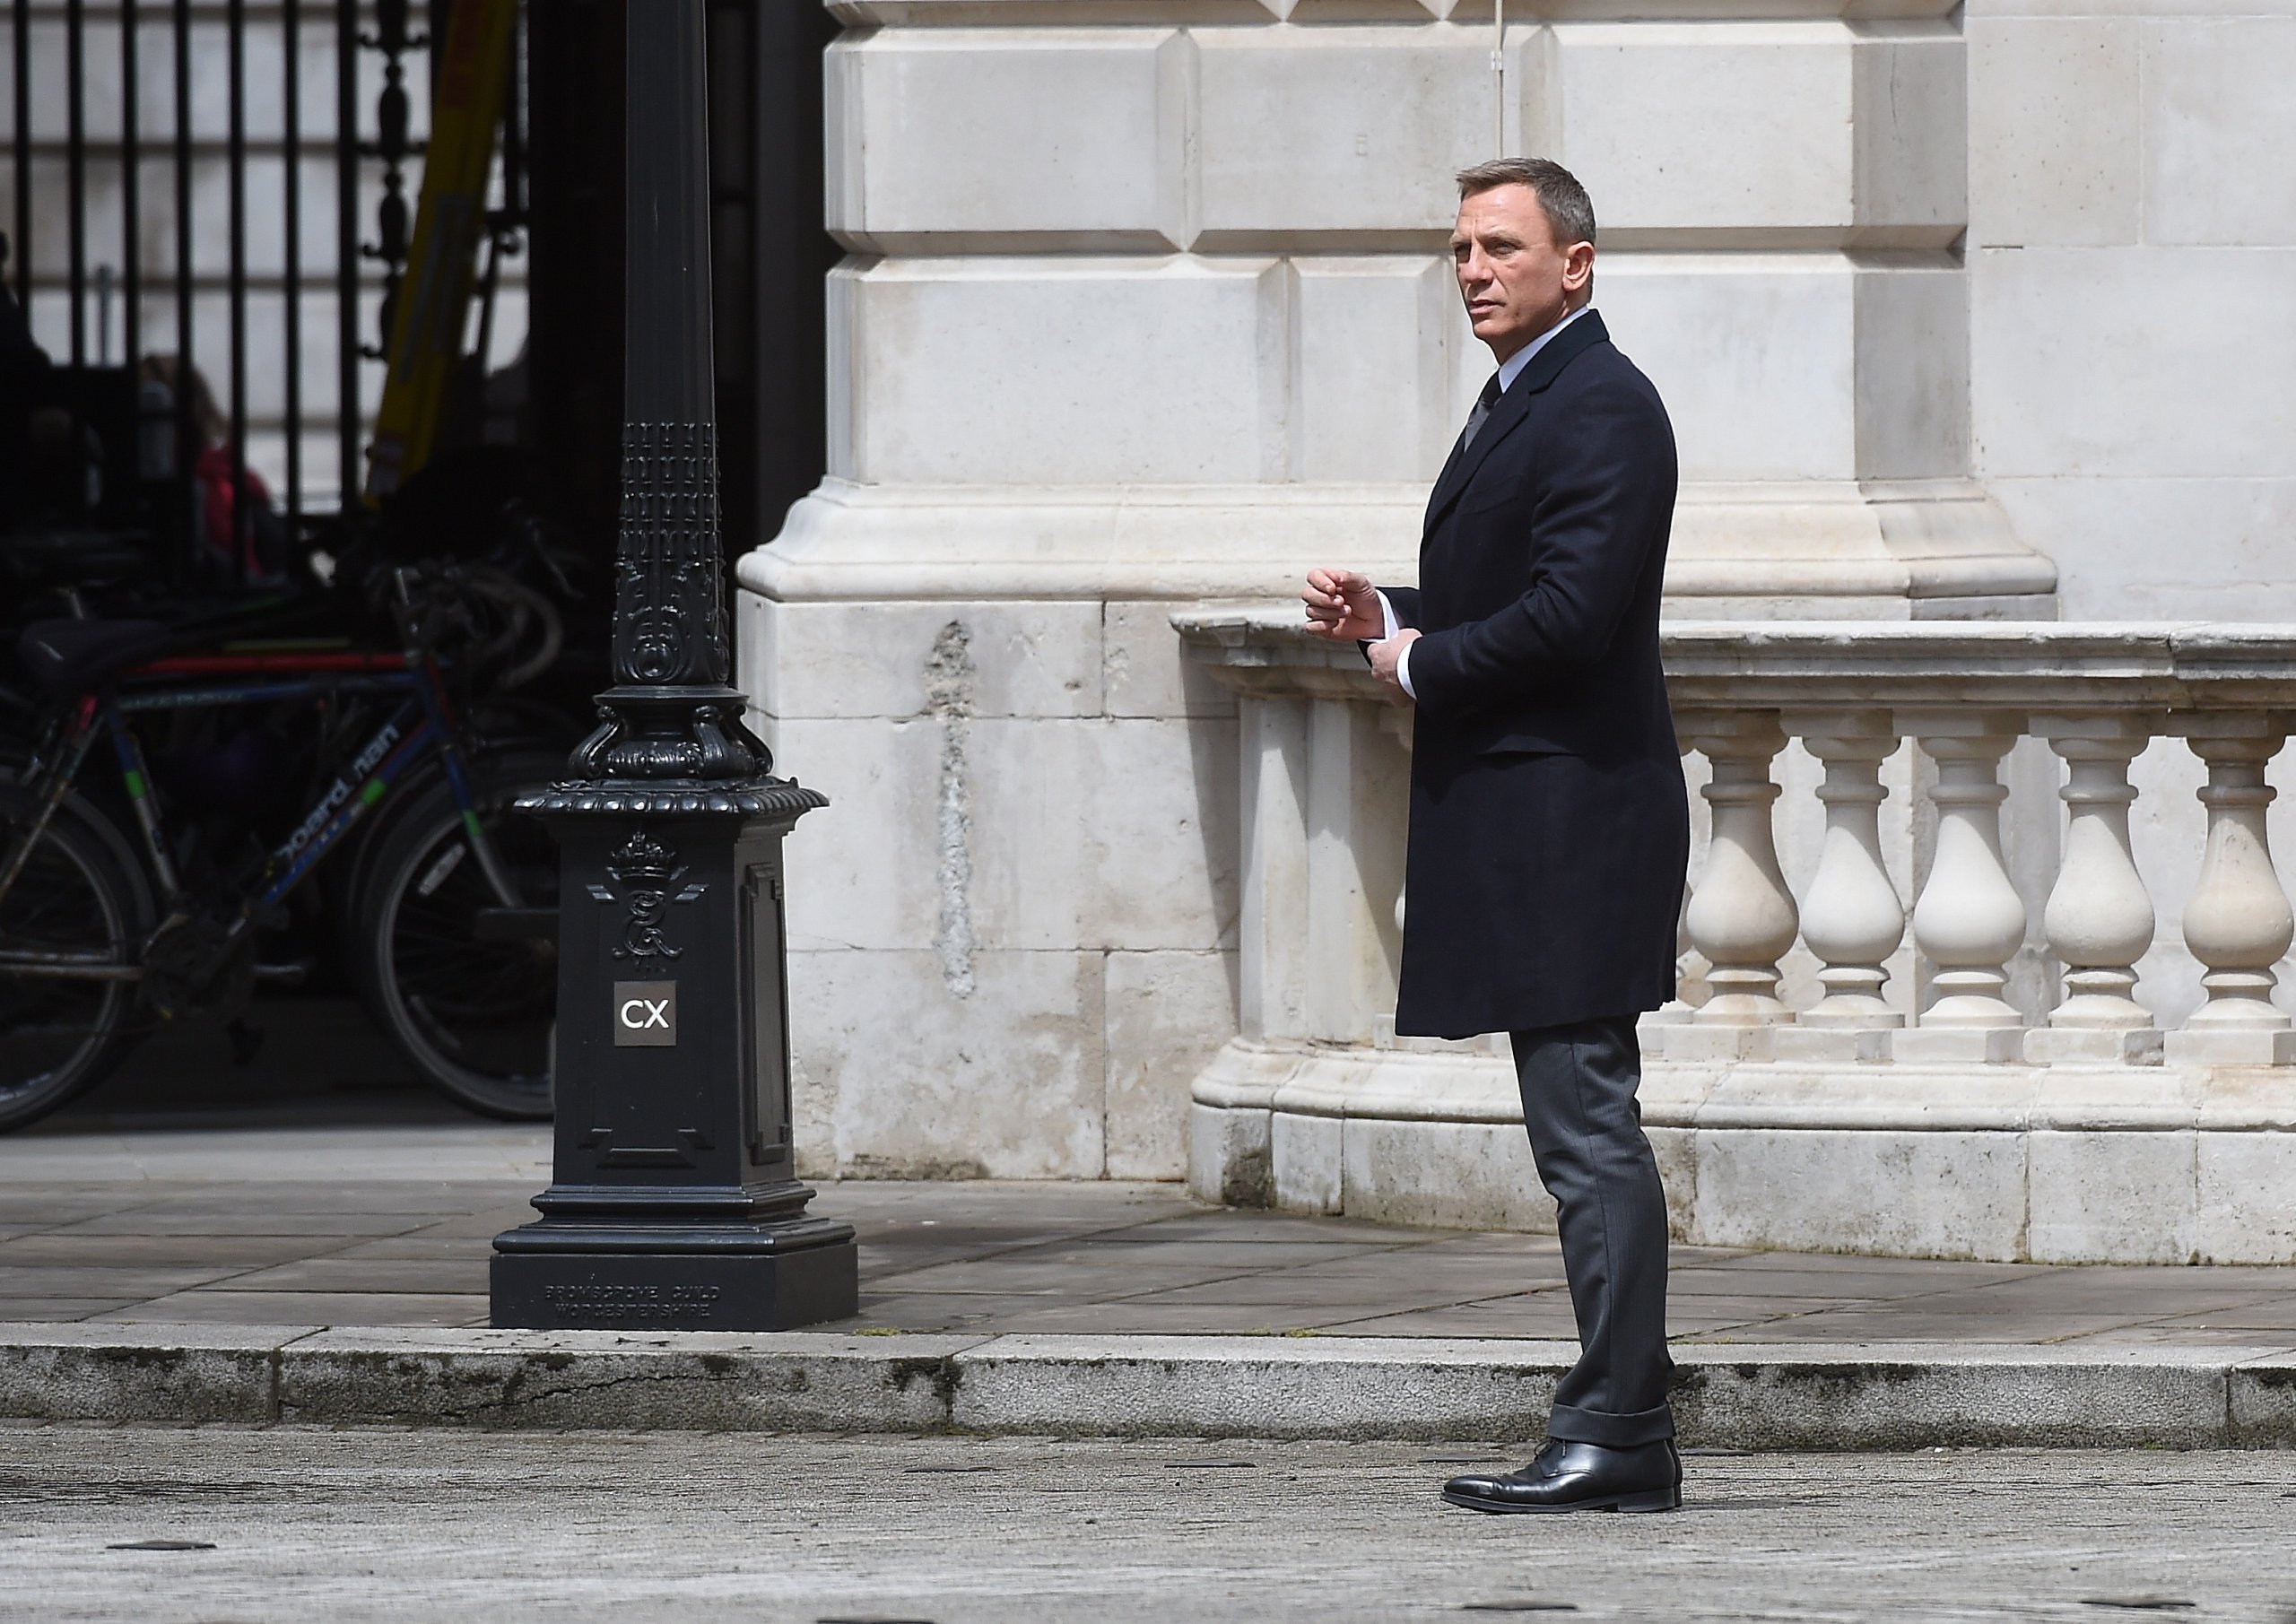 007 スペクター でダニエル クレイグ演じるジェームズ ボンドが履いた革靴を追求 メンズファッションメディア Otokomae 男前研究所